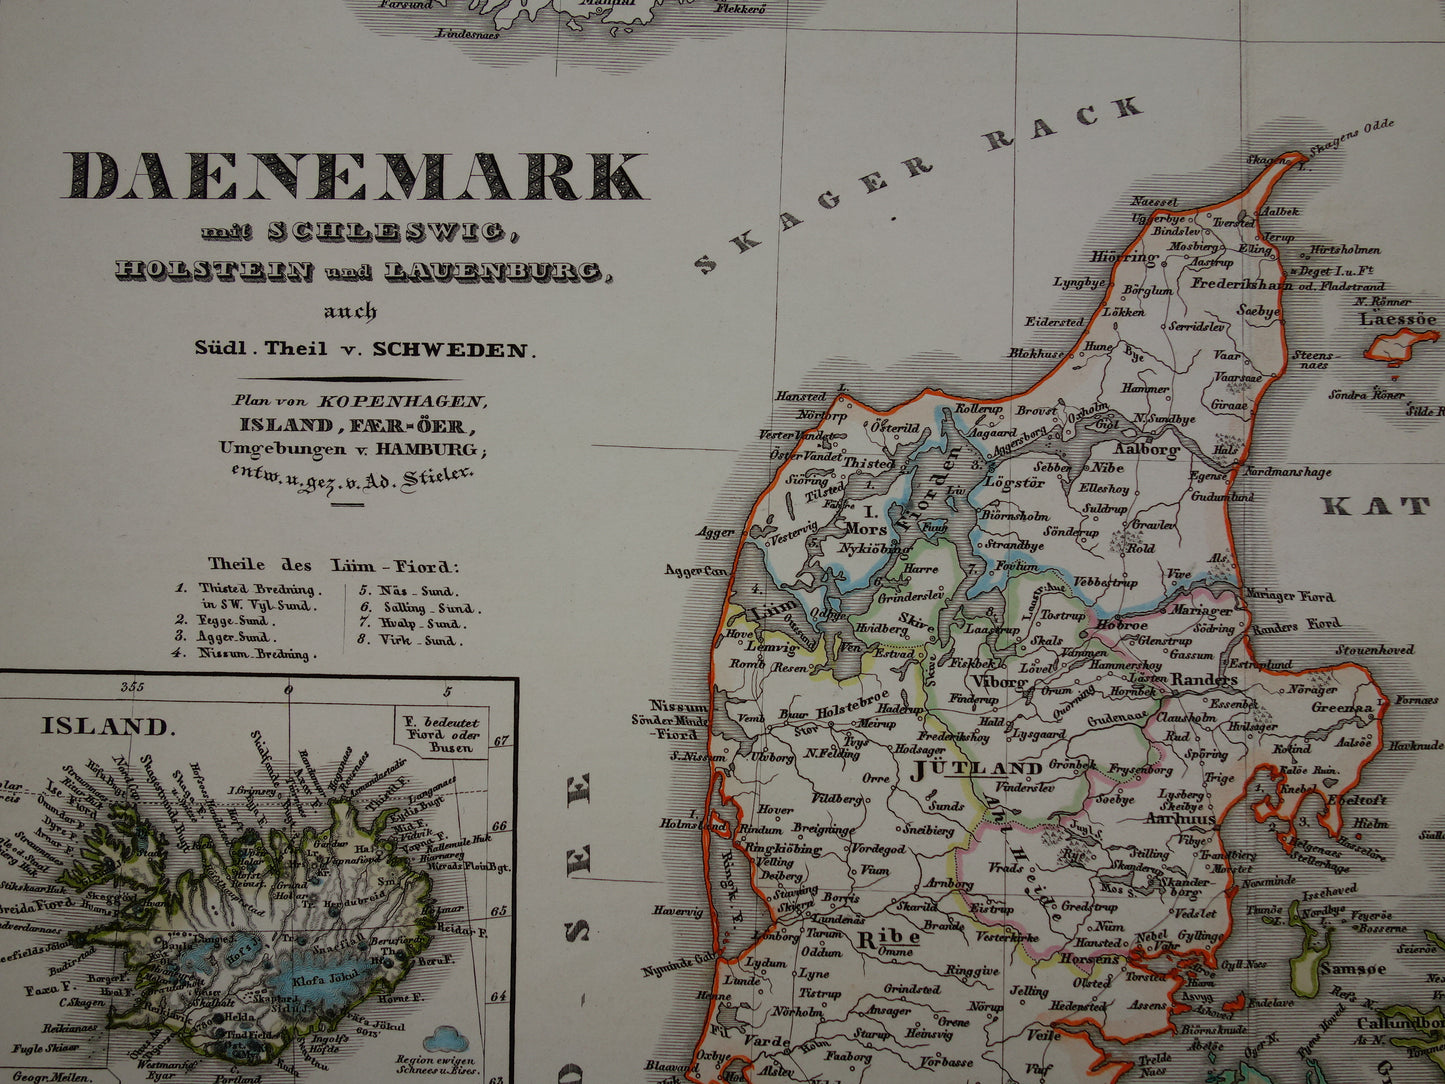 DENEMARKEN oude kaart van Denemarken uit 1860 originele antieke landkaart Kopenhagen vintage met jaartal